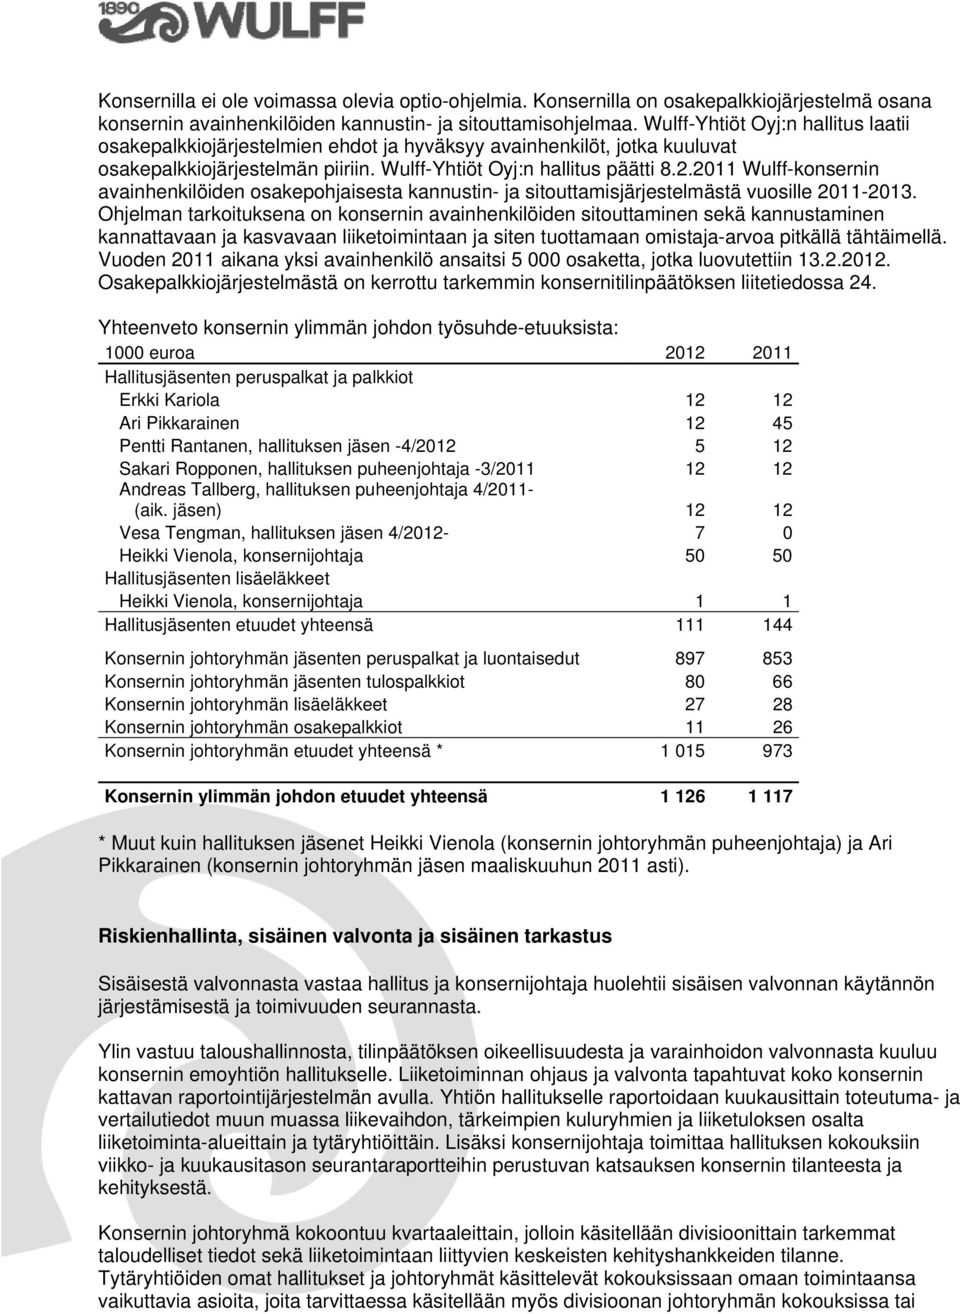 2011 Wulff-konsernin avainhenkilöiden osakepohjaisesta kannustin- ja sitouttamisjärjestelmästä vuosille 2011-2013.